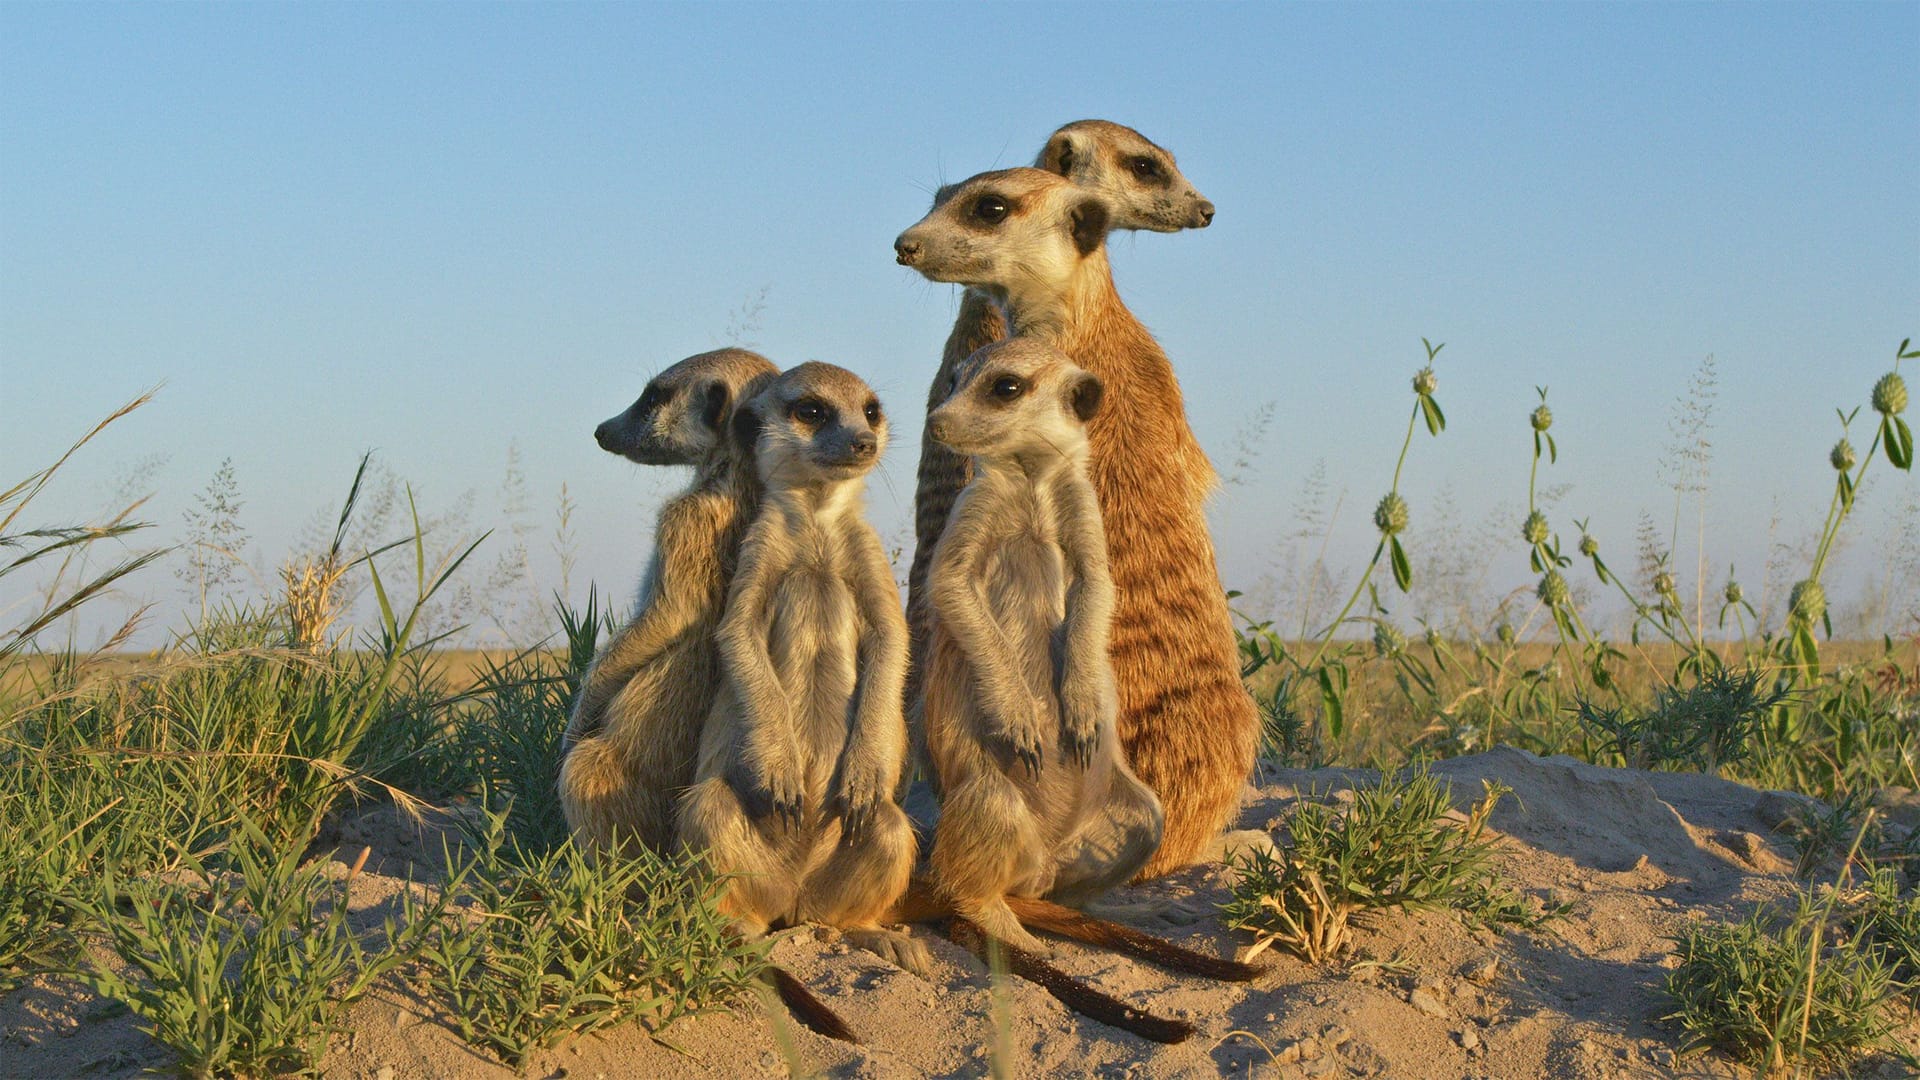 Eddi and his meerkat family